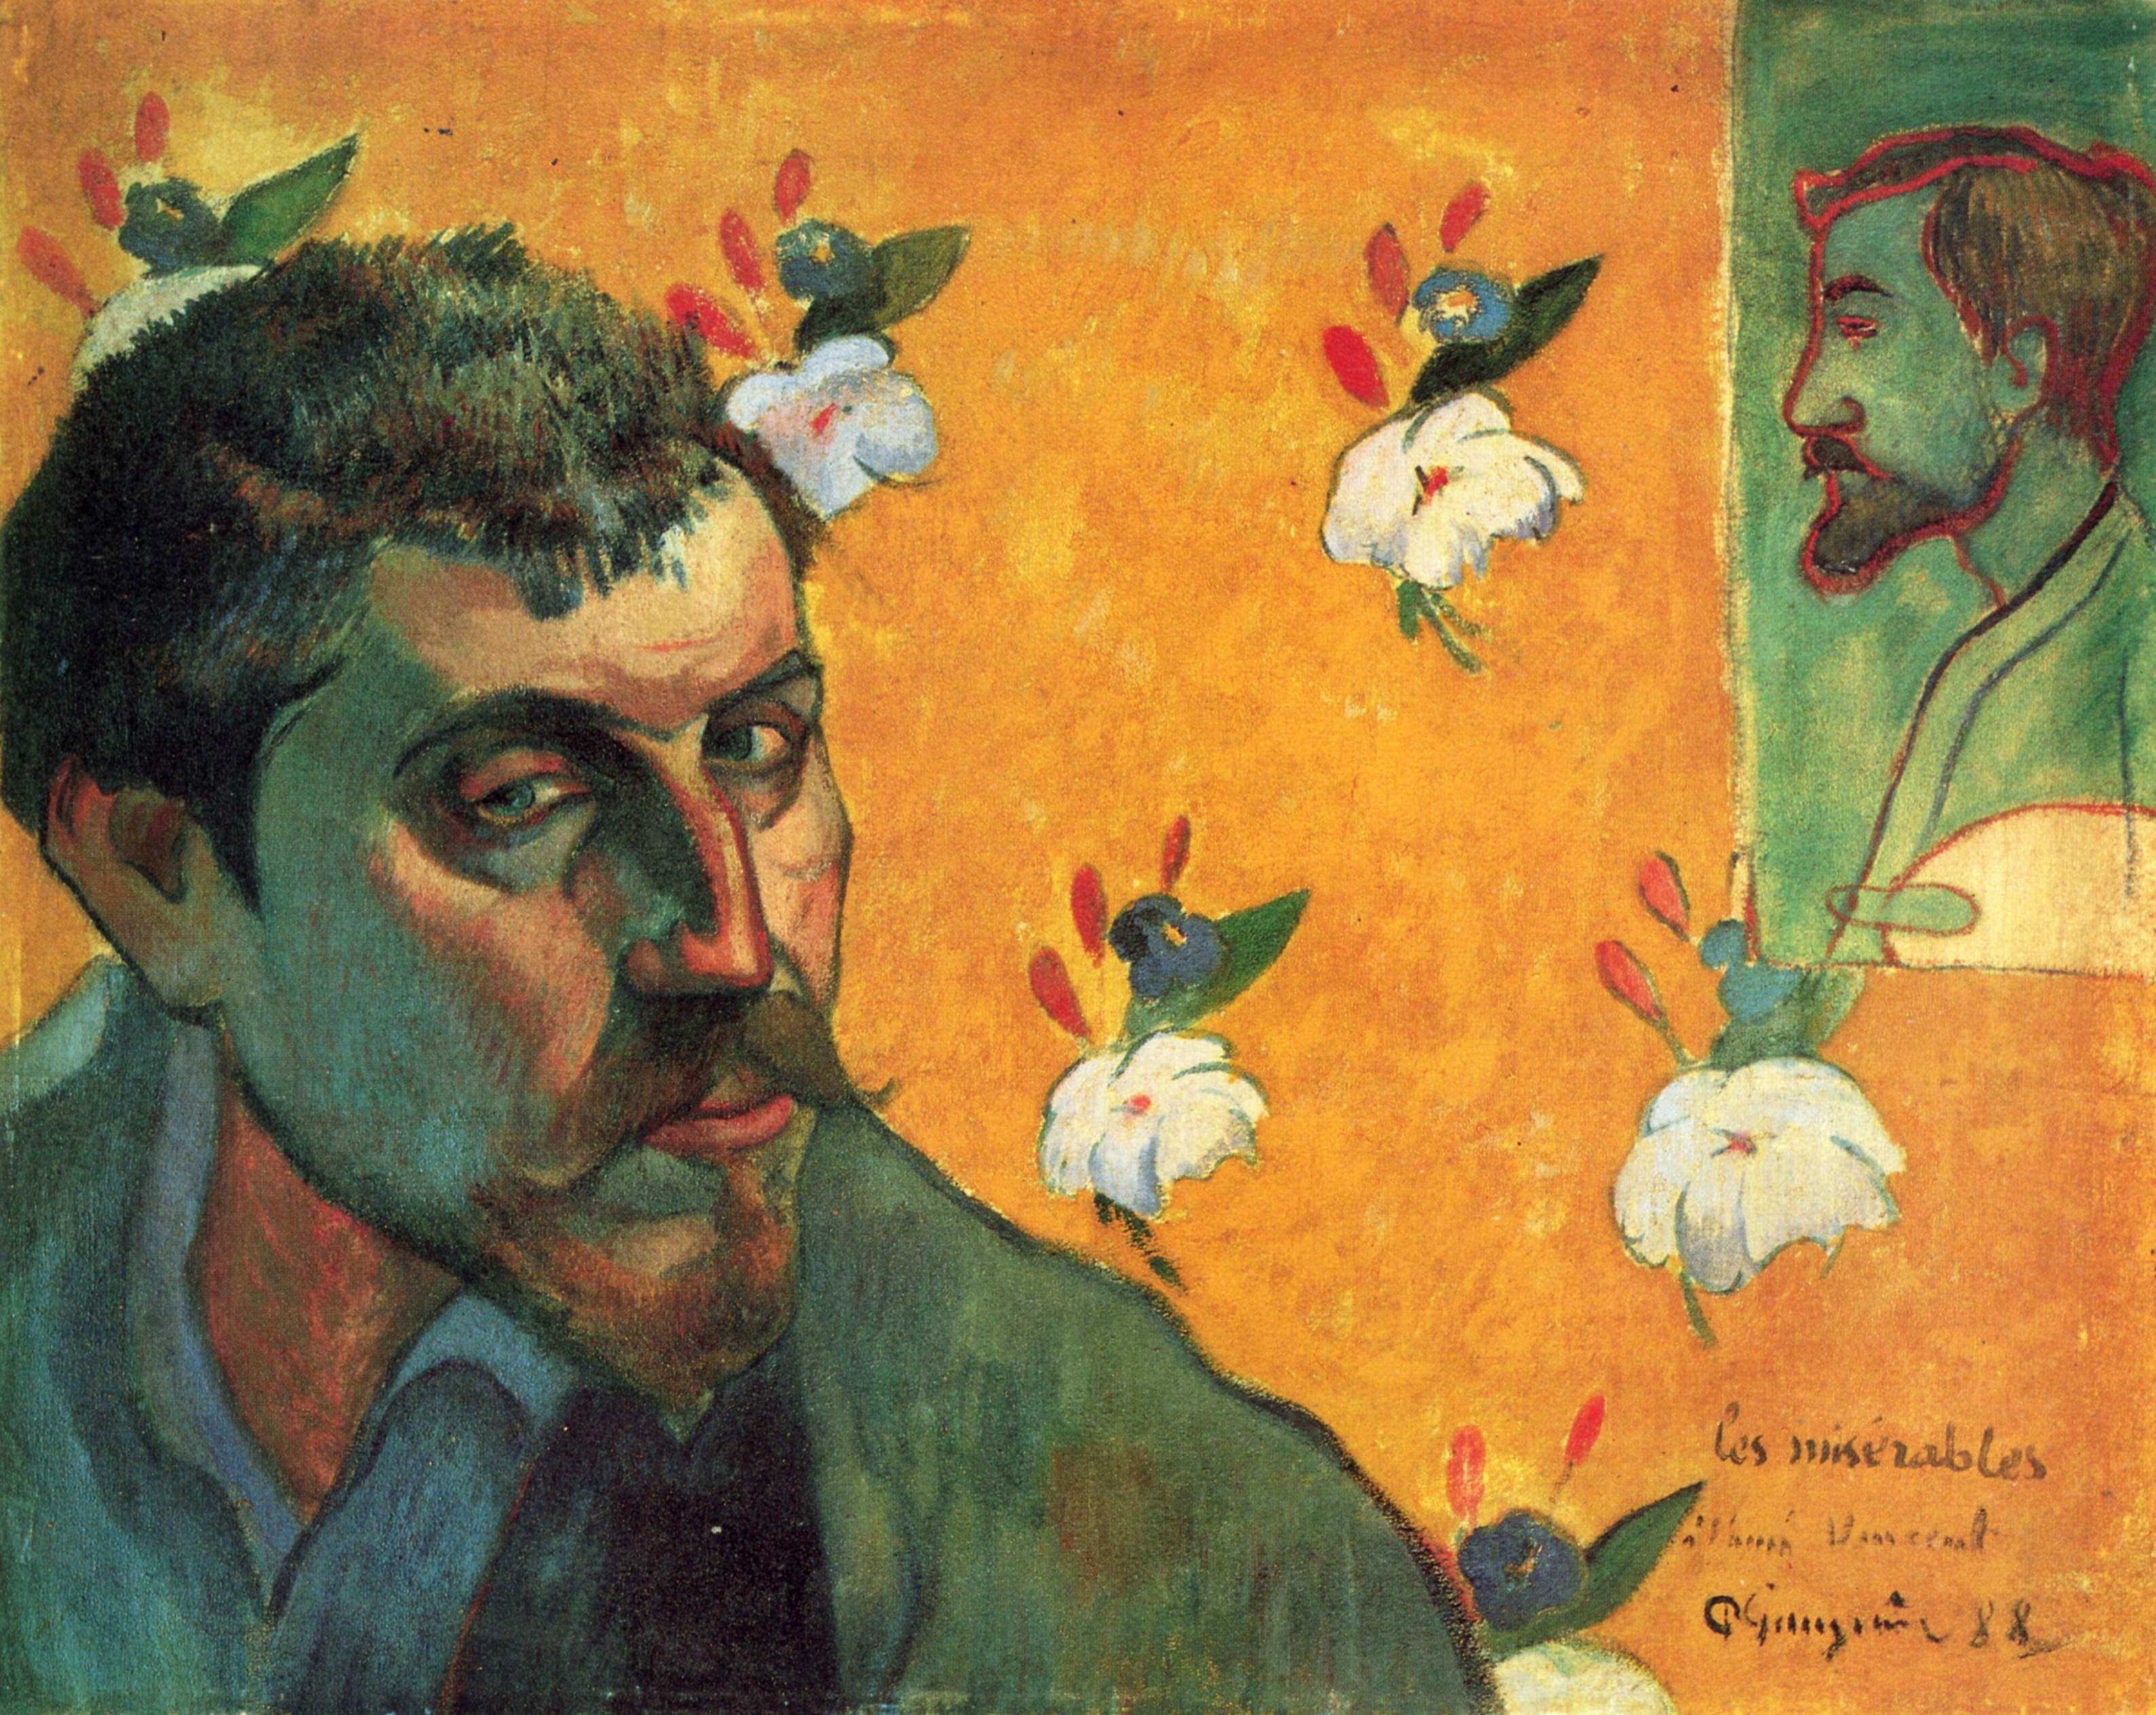 Émile Bernard ile Otoportre by Paul Gauguin - 1888 - 45 × 55 cm  Van Gogh Müzesi